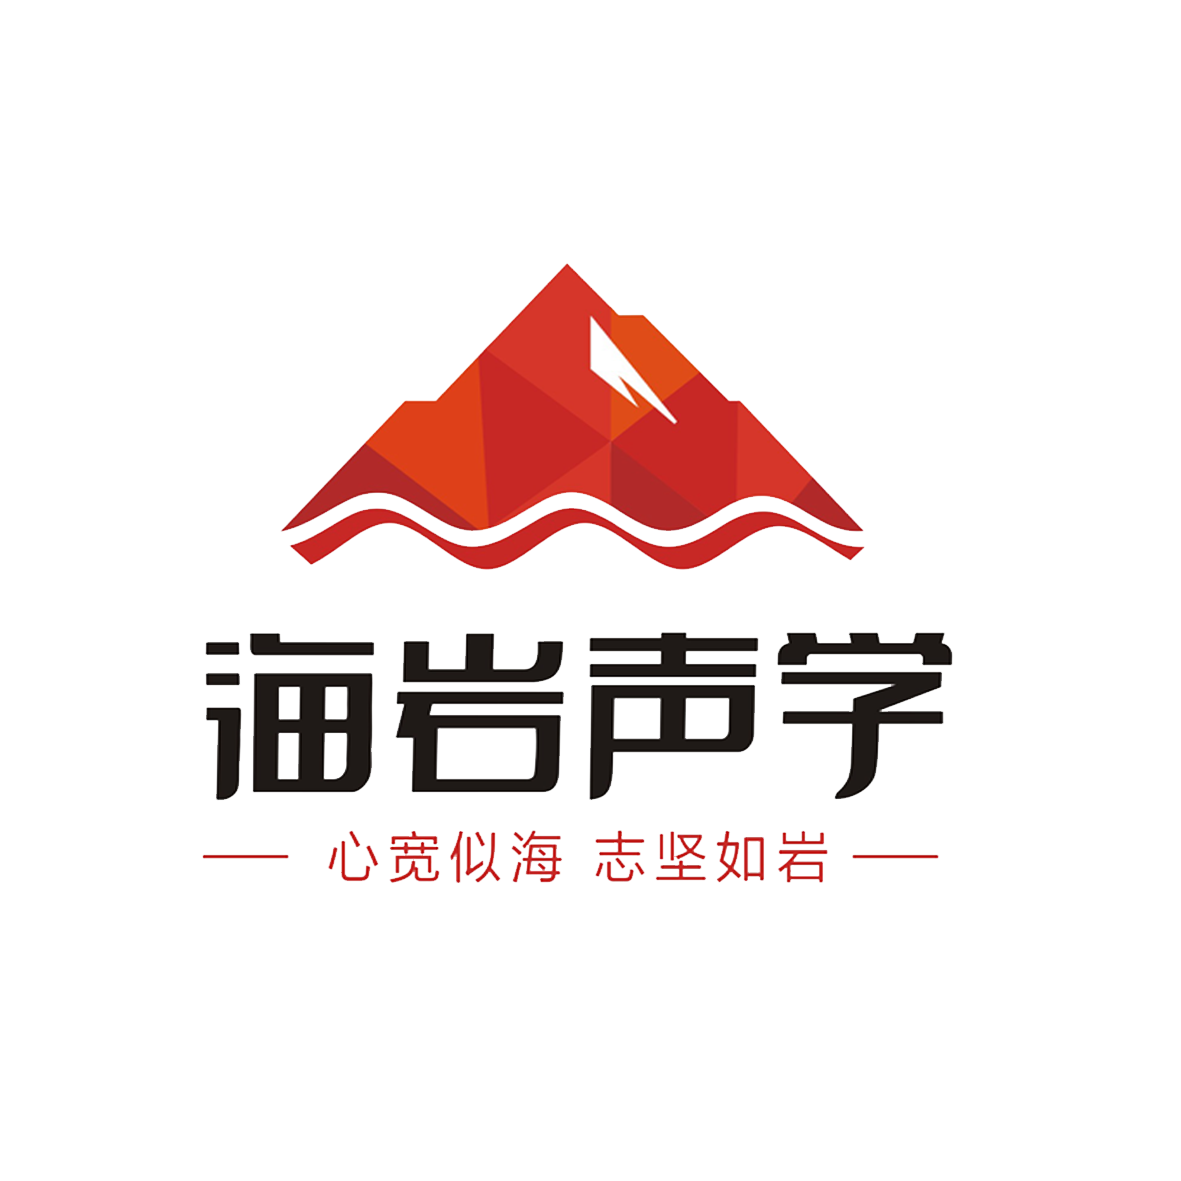 合作市声学设计 四川海岩声学科技有限公司